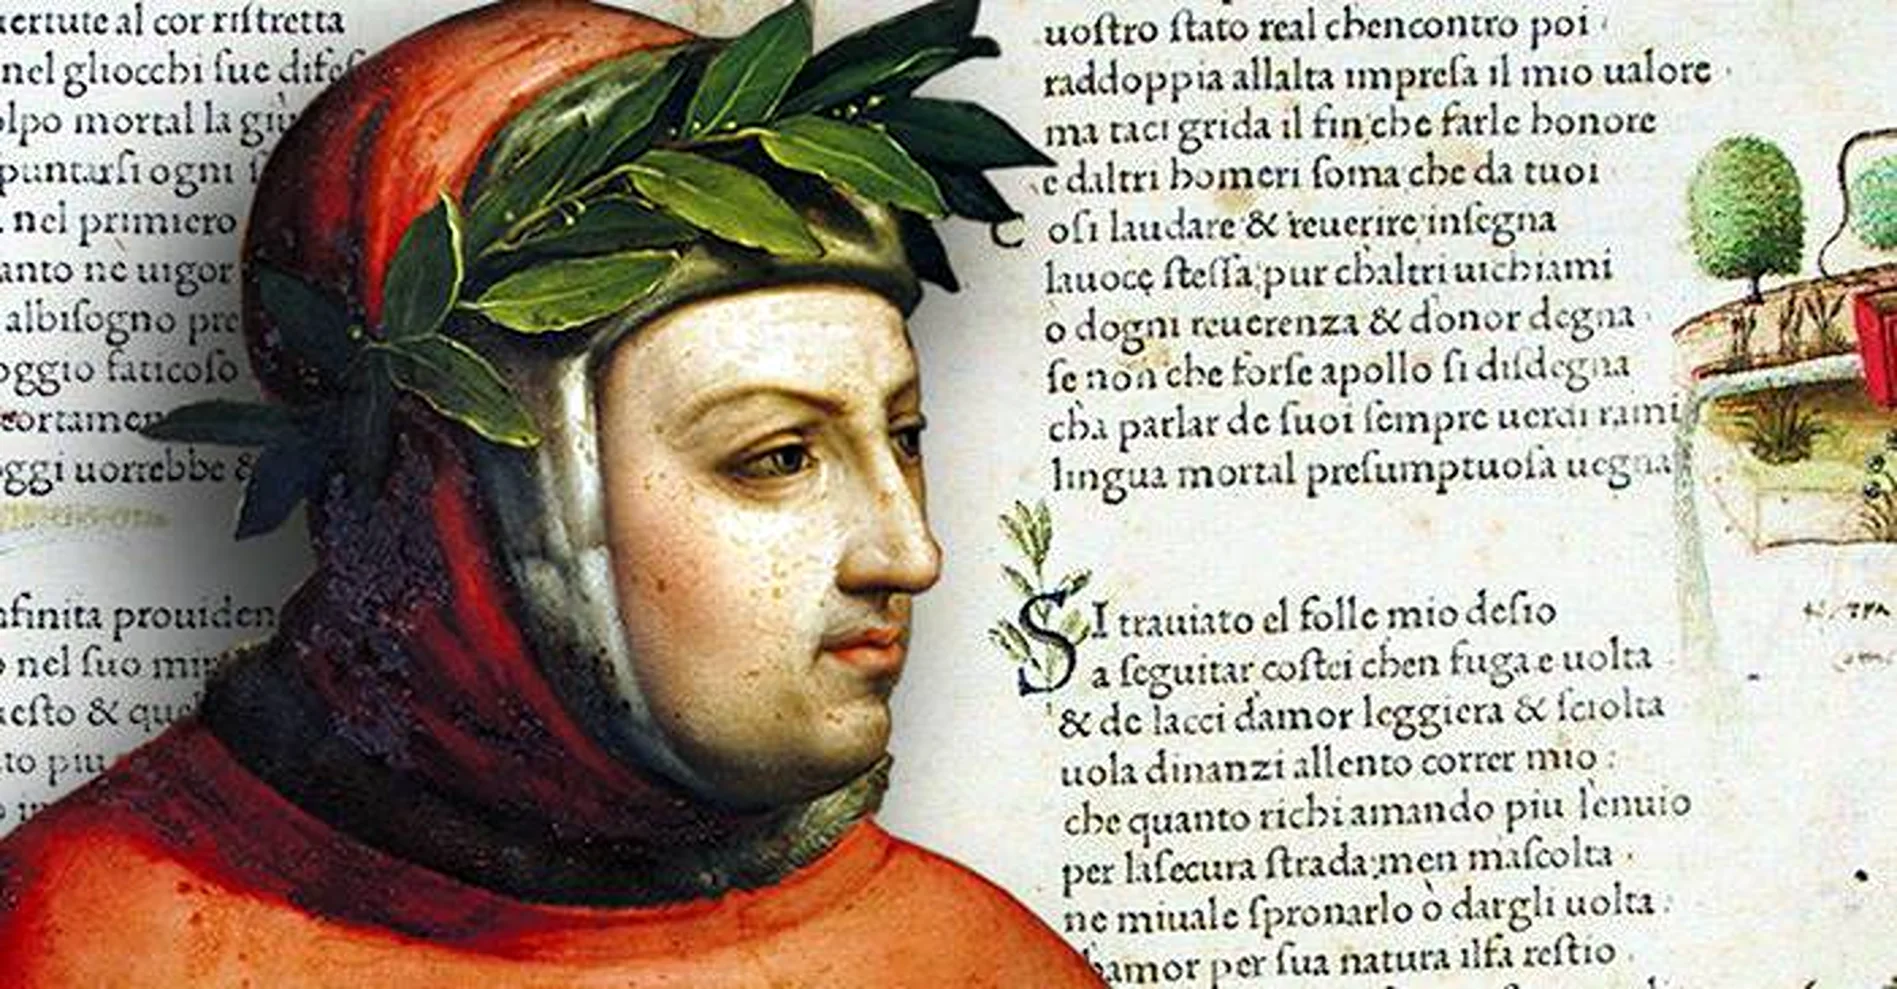 Povestea de dragoste care a inspirat Renașterea italiană a fost o mare dramă